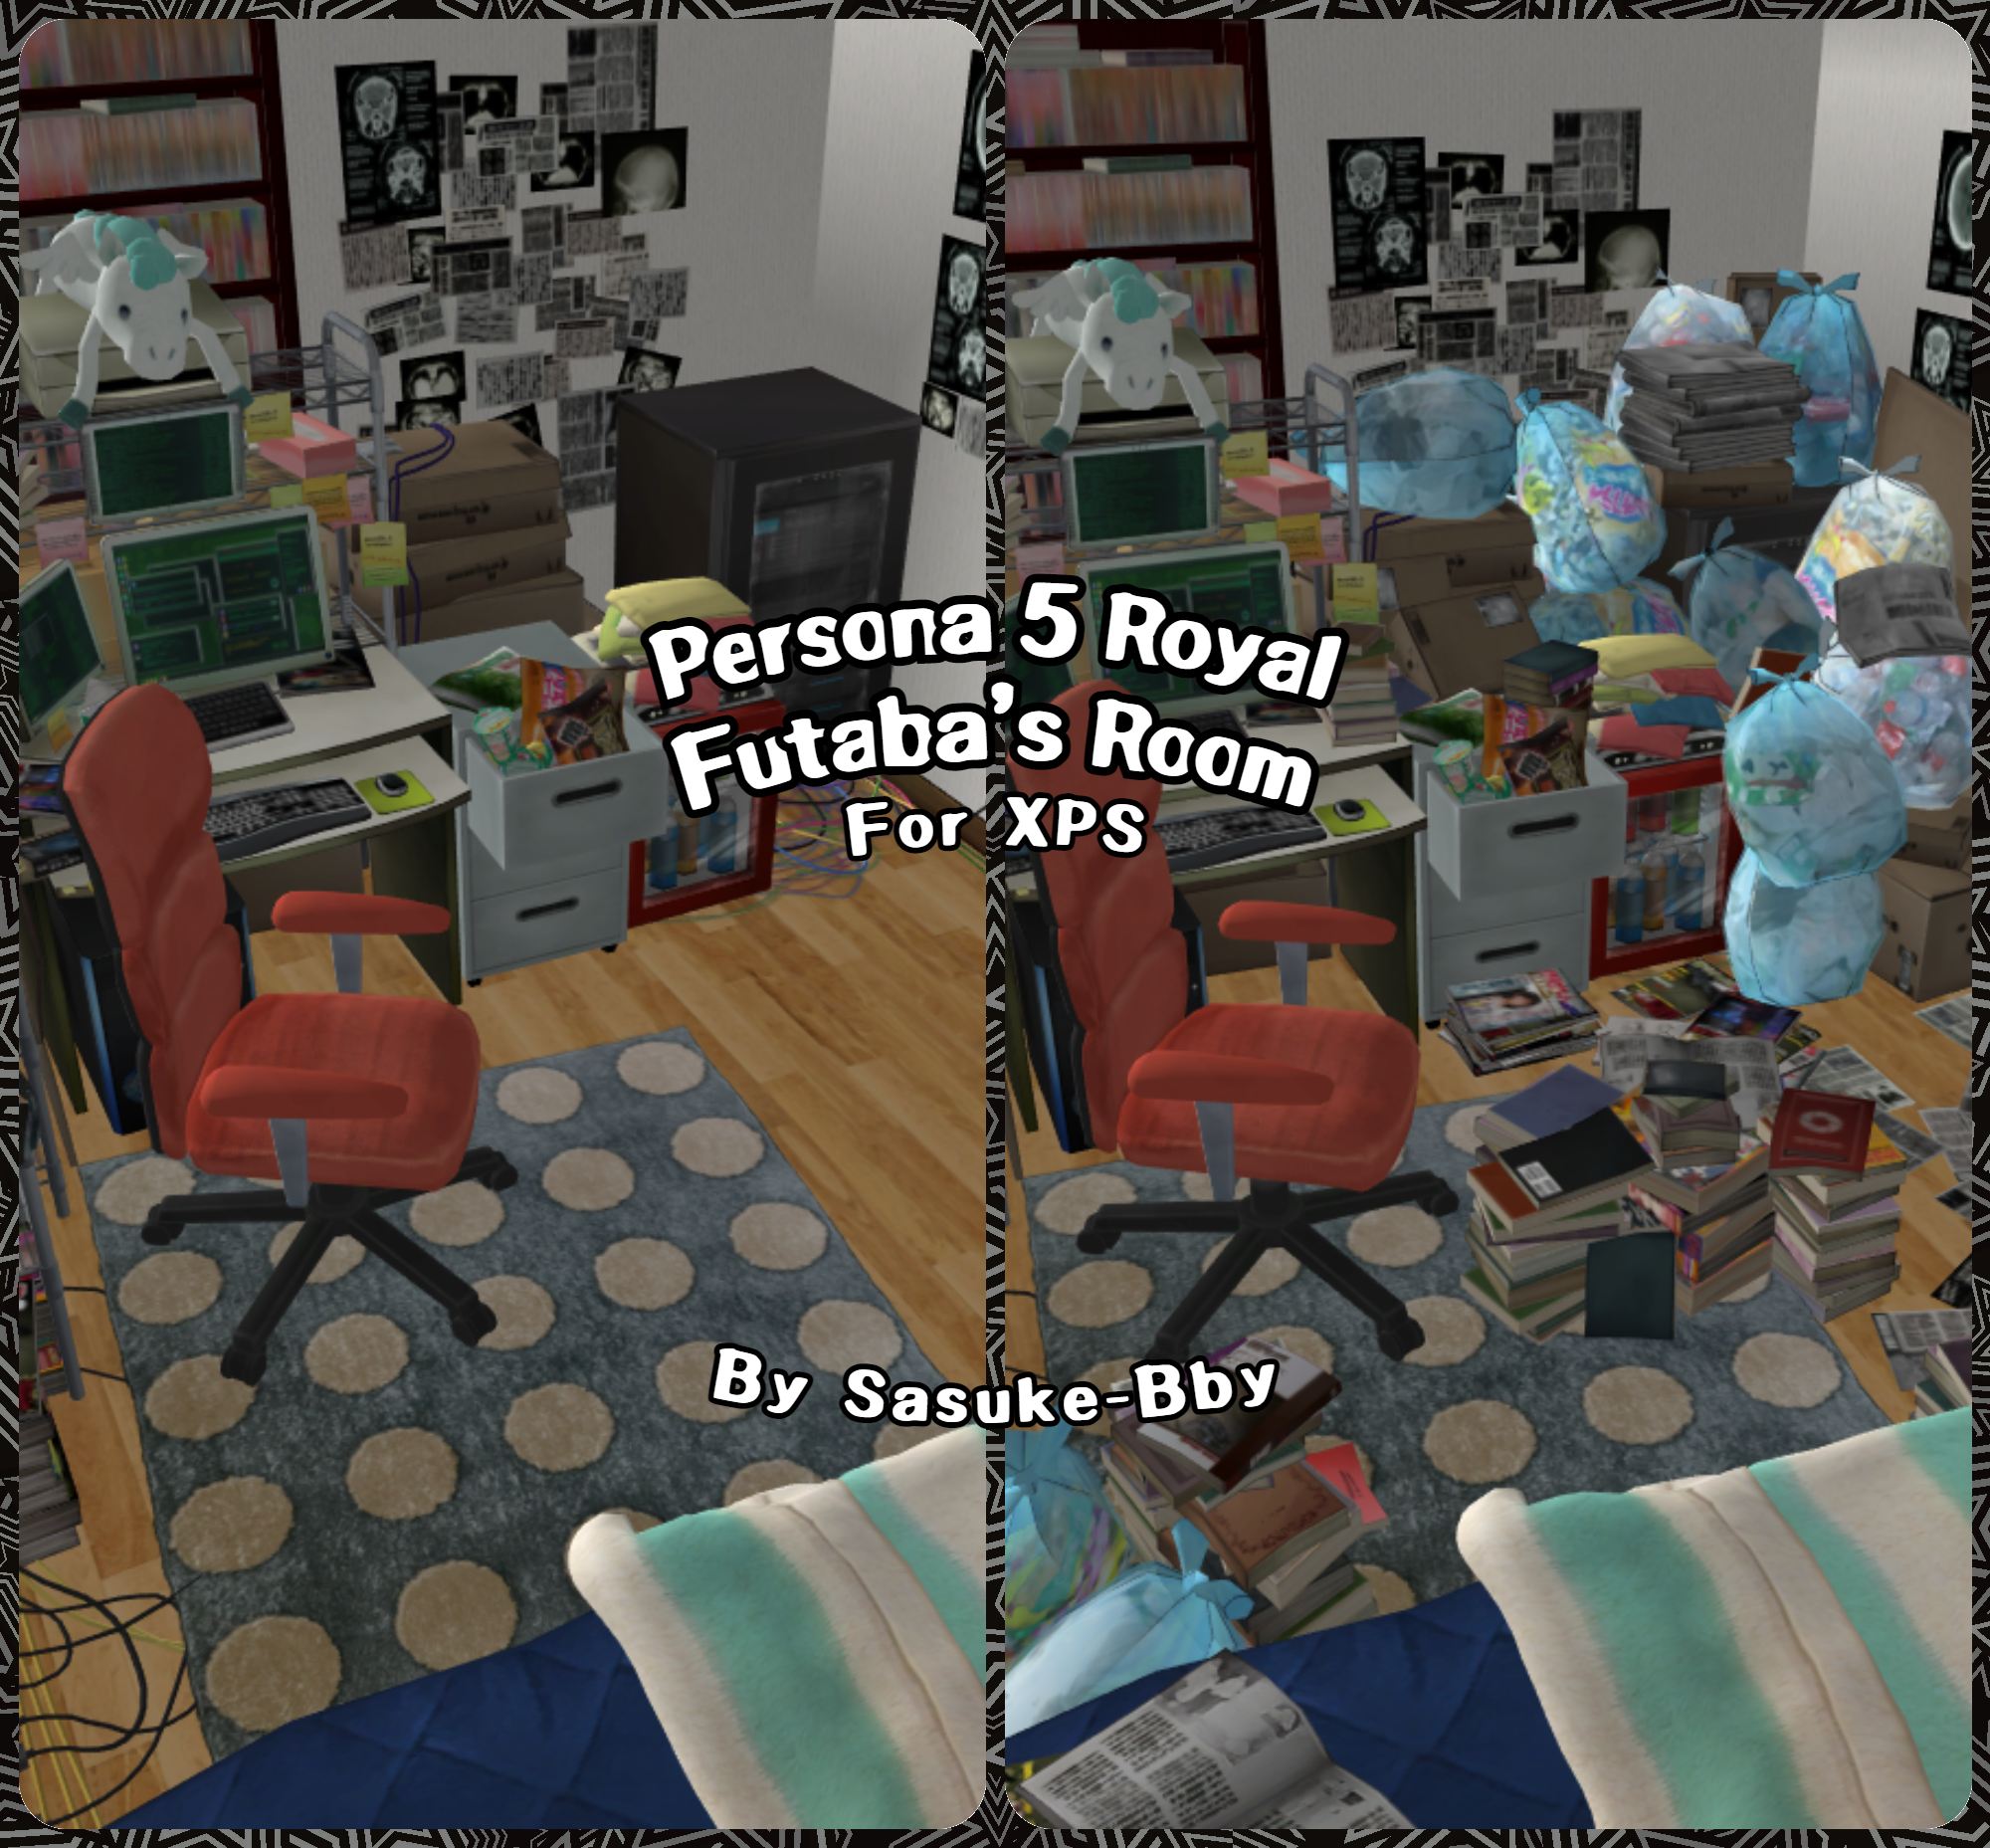 Persona 5 Royal Futaba Room Xps By Sasuke Bby On Deviantart